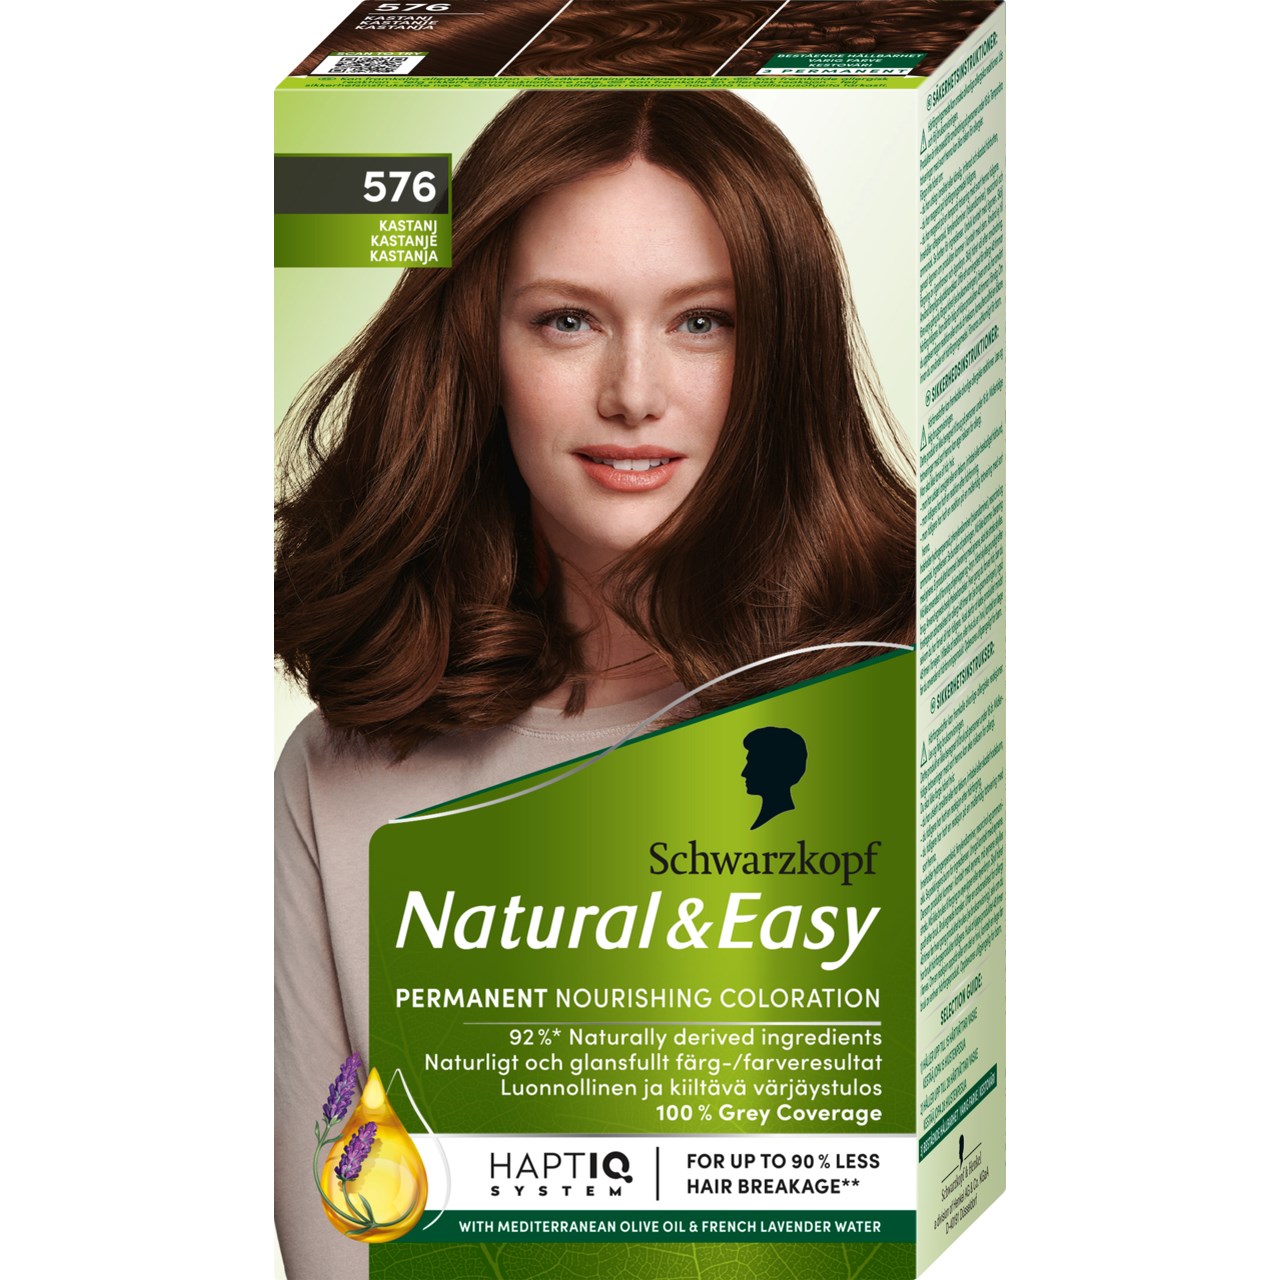 Bilde av Schwarzkopf Natural & Easy Hair Color 576 Kastanj